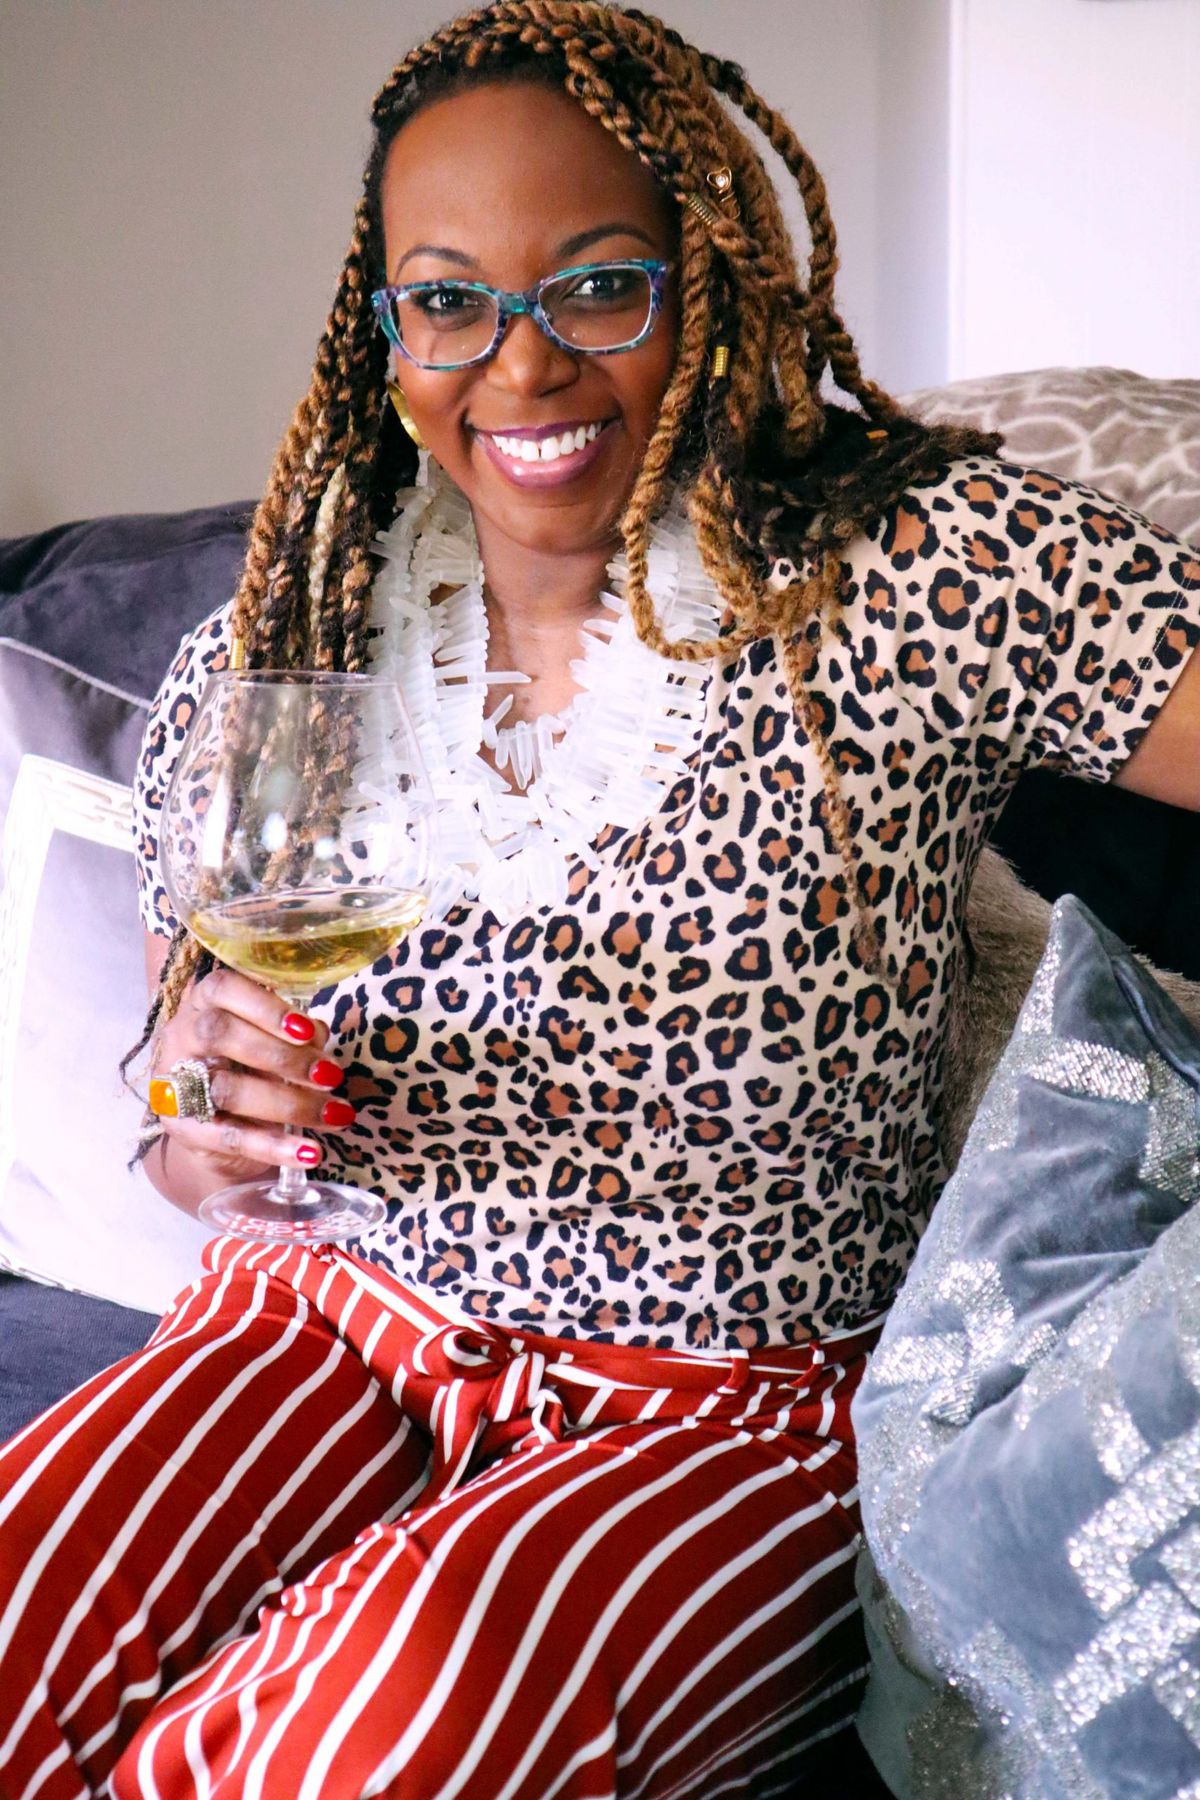 Mujeres empresarias negras están construyendo su propio espacio en el vino